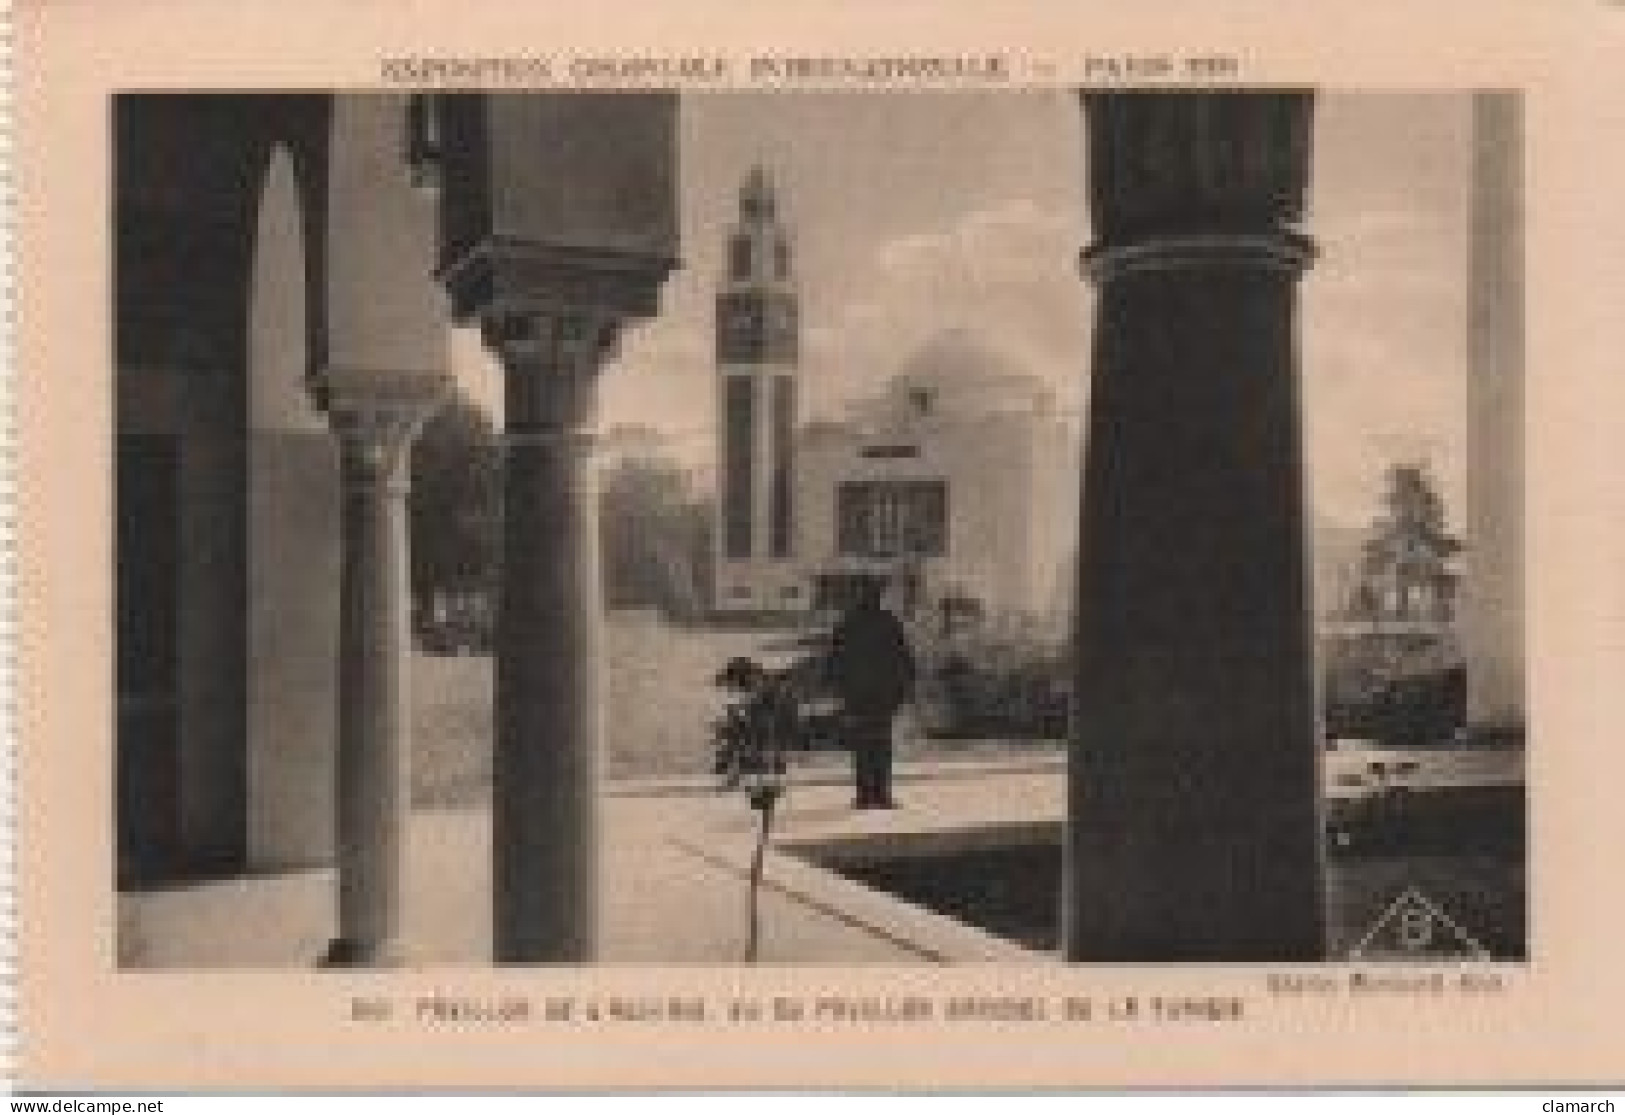 LOT de 124 CPSM de PARIS Exposition Coloniale de 1931-Toutes différentes-BE- frais d'envoi pour la F 8.25